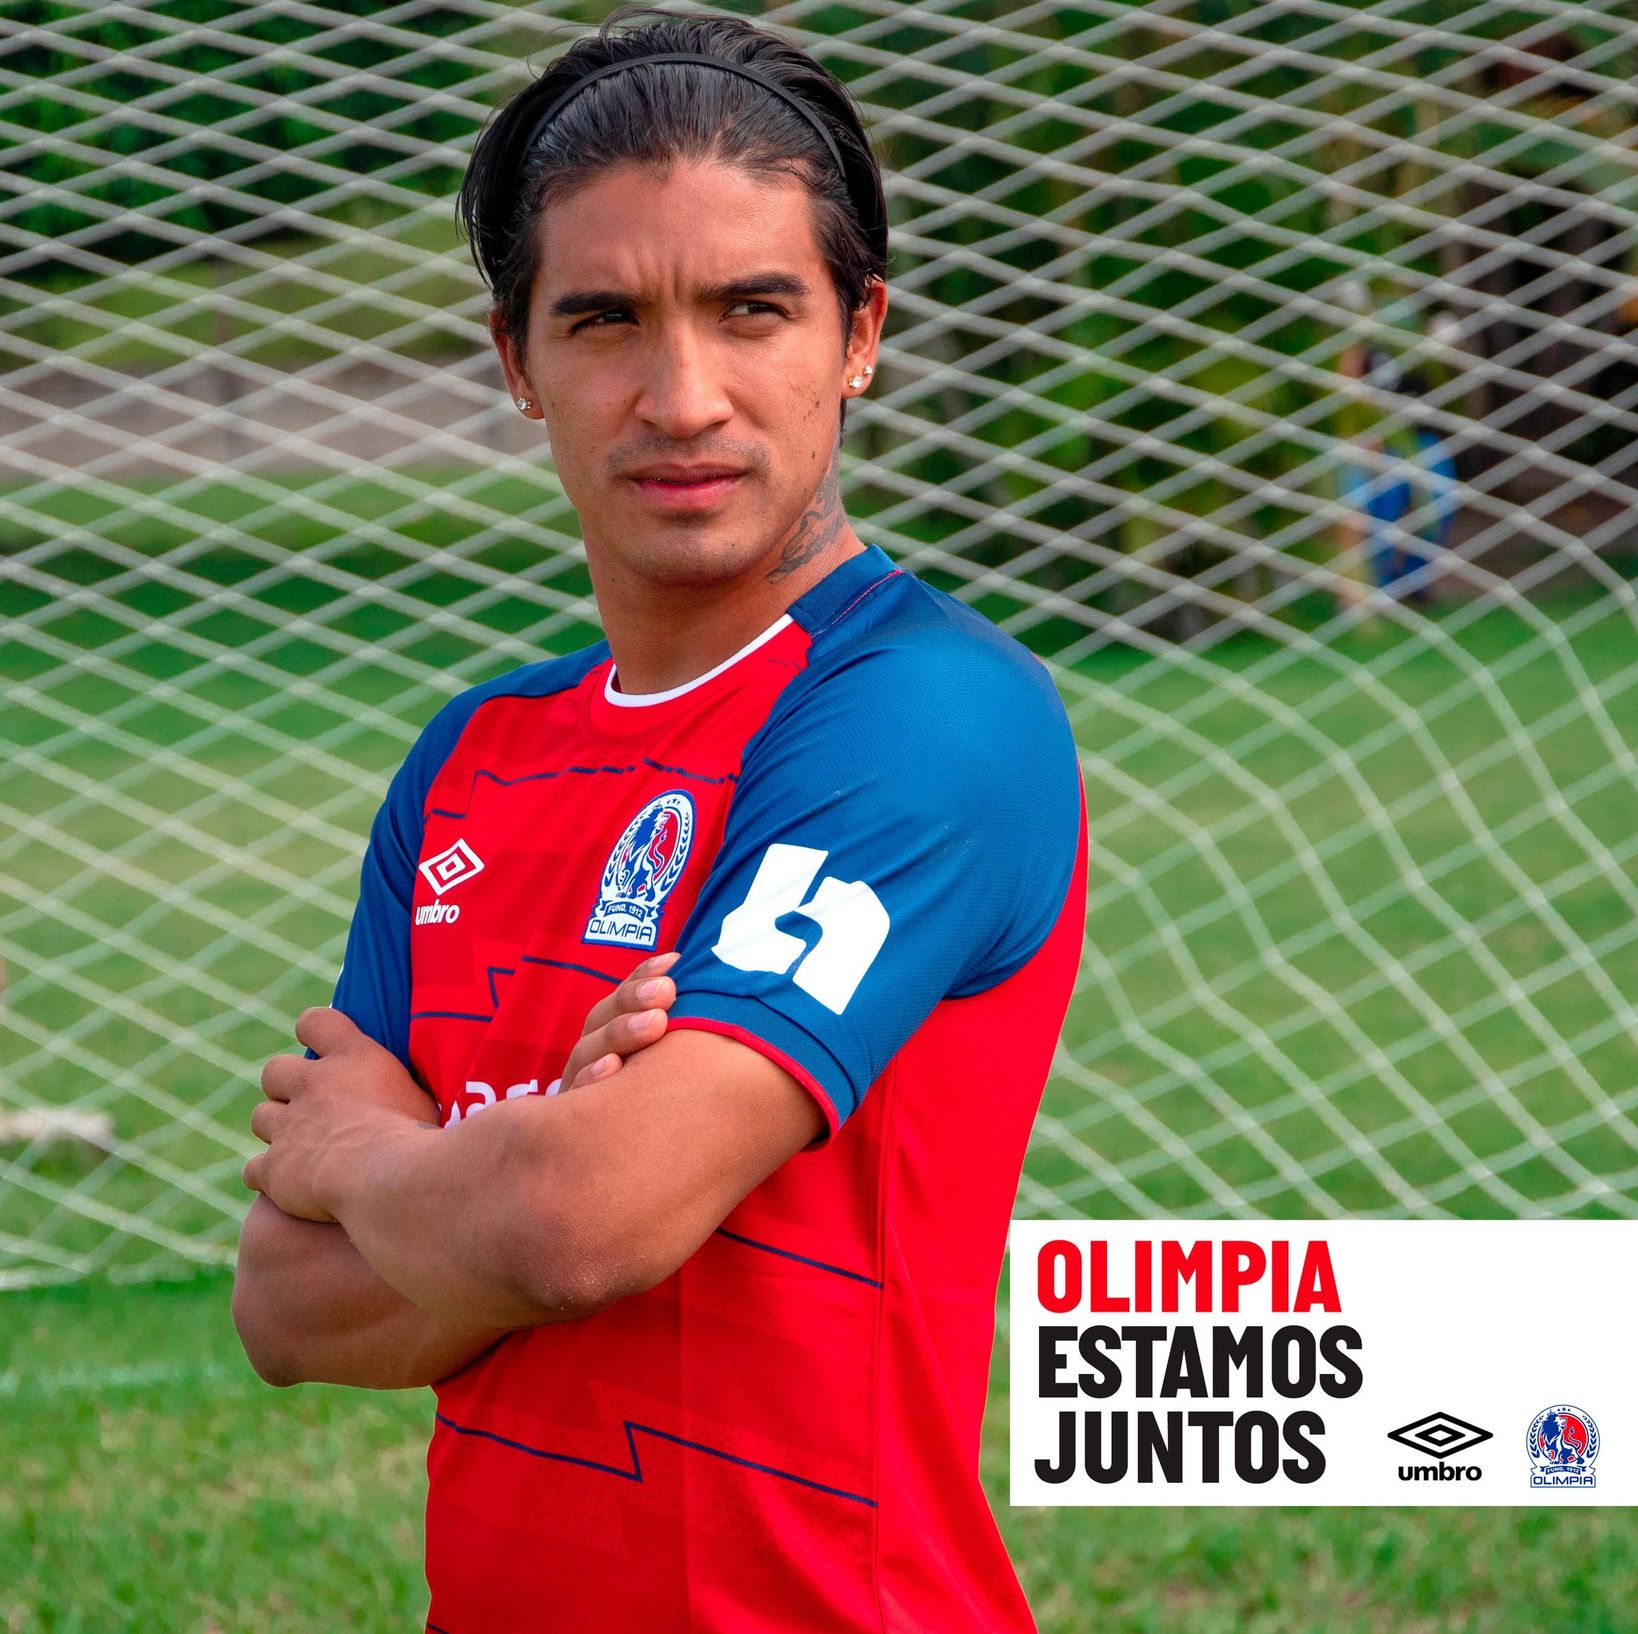 Club Olimpia 2020-21 Umbro Home, Away and Third Kits | 20/21 Kits ...